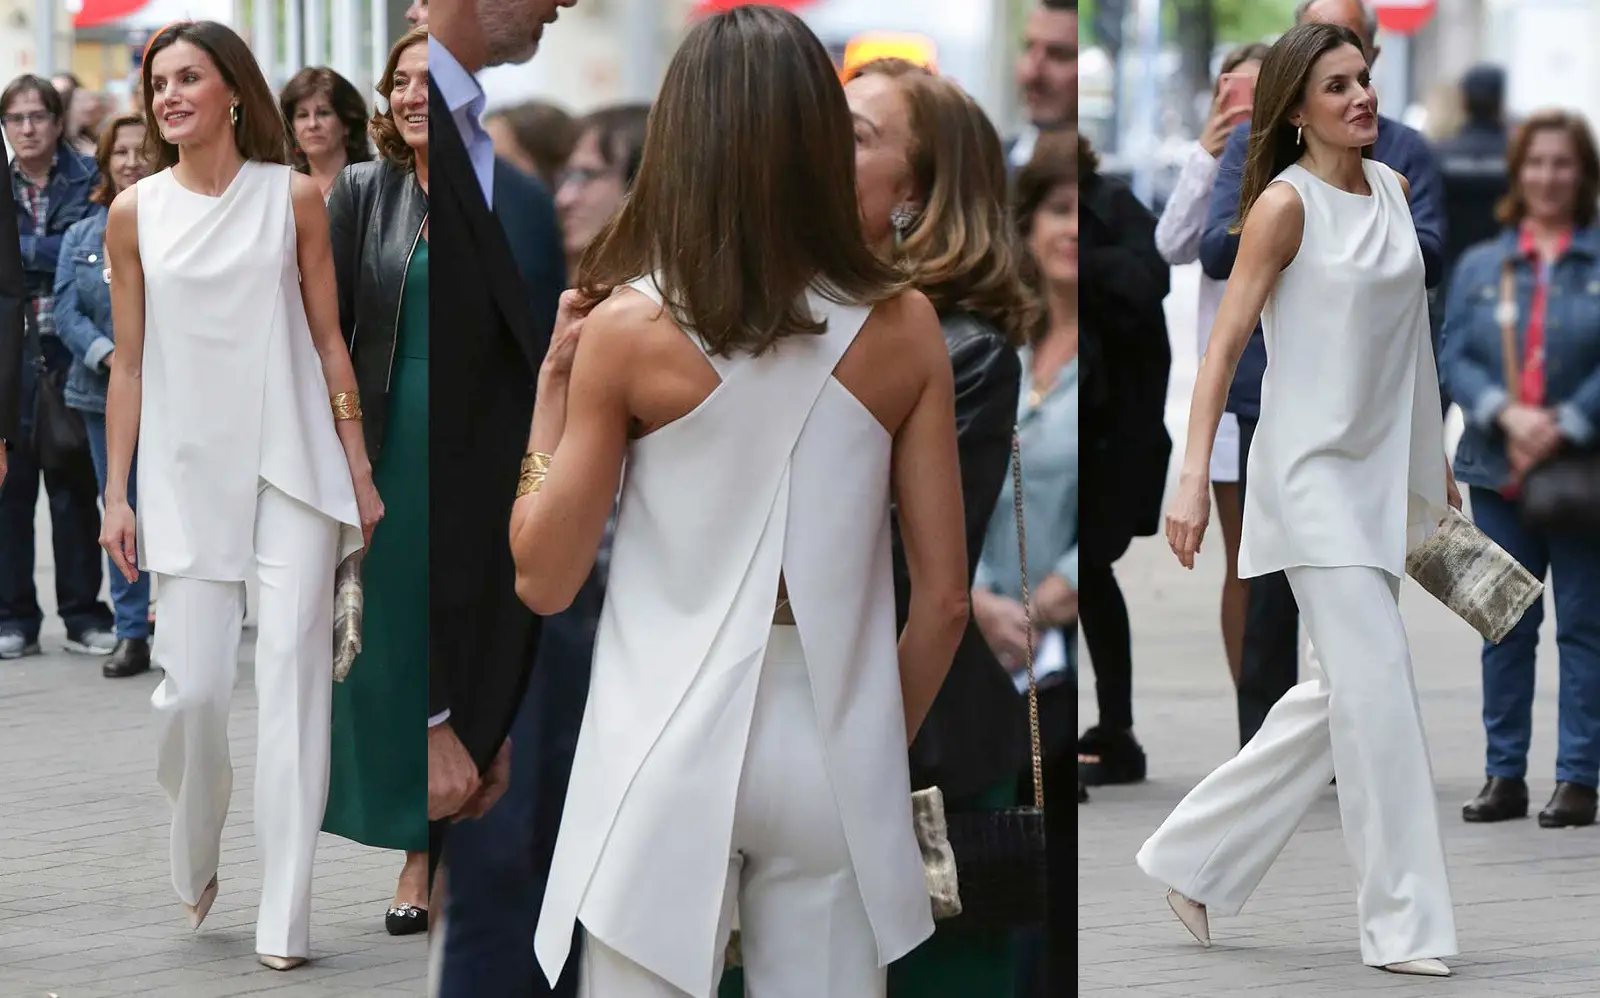 Queen Letizia wore a 2-piece white ensemble by Pedro del Hierro